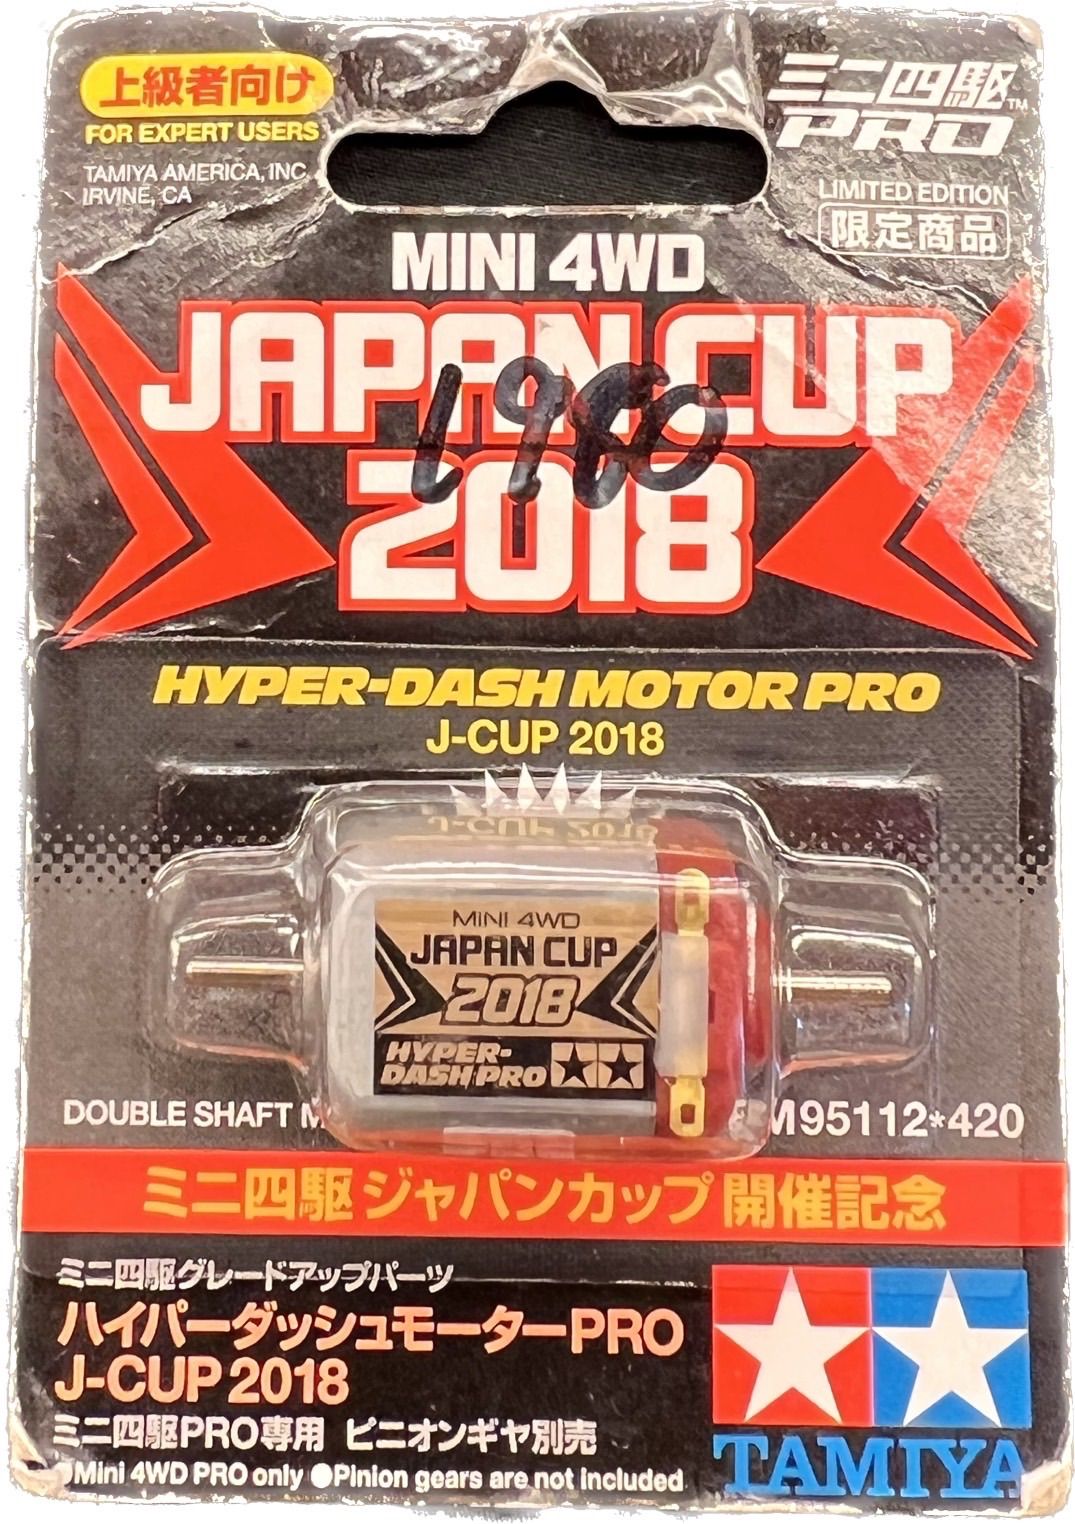 感謝価格】 ハイパーダッシュモーターPRO J-CUP 2018 模型/プラモデル